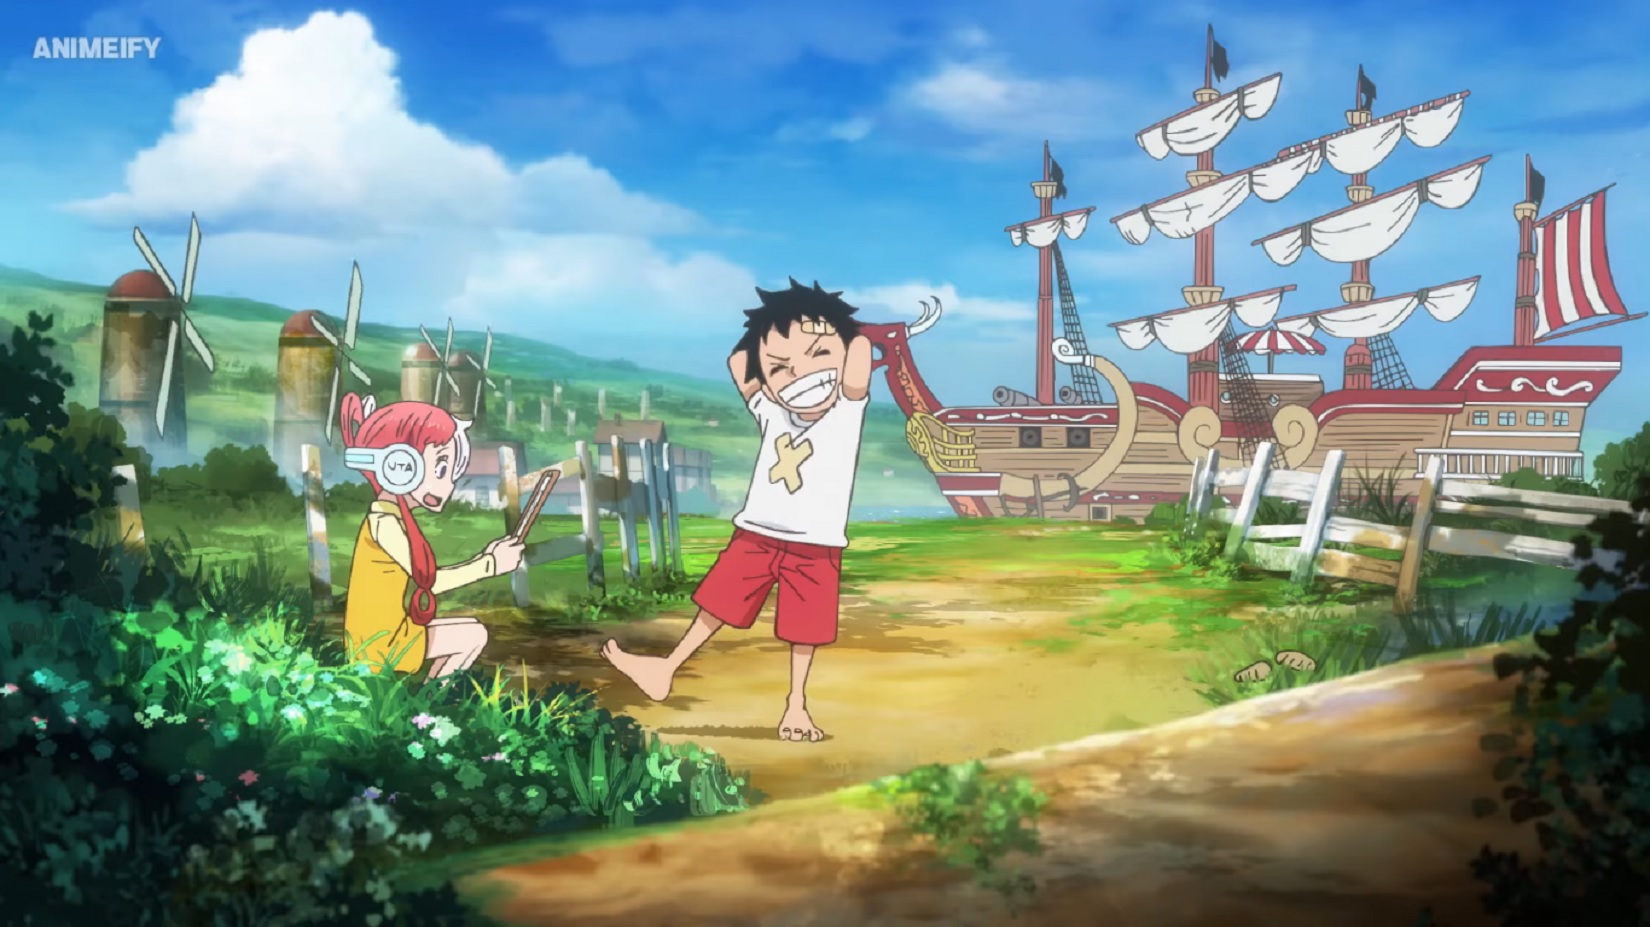 Bạn yêu thích One Piece? Hãy xem hình ảnh của One Piece Movie RED để khám phá thêm một chương mới trong cuộc hành trình đầy màu sắc và nhiệm vụ khó khăn của Luffy và đồng đội. Bạn sẽ không muốn bỏ lỡ những tình tiết căng thẳng và cảm động của bộ phim này!